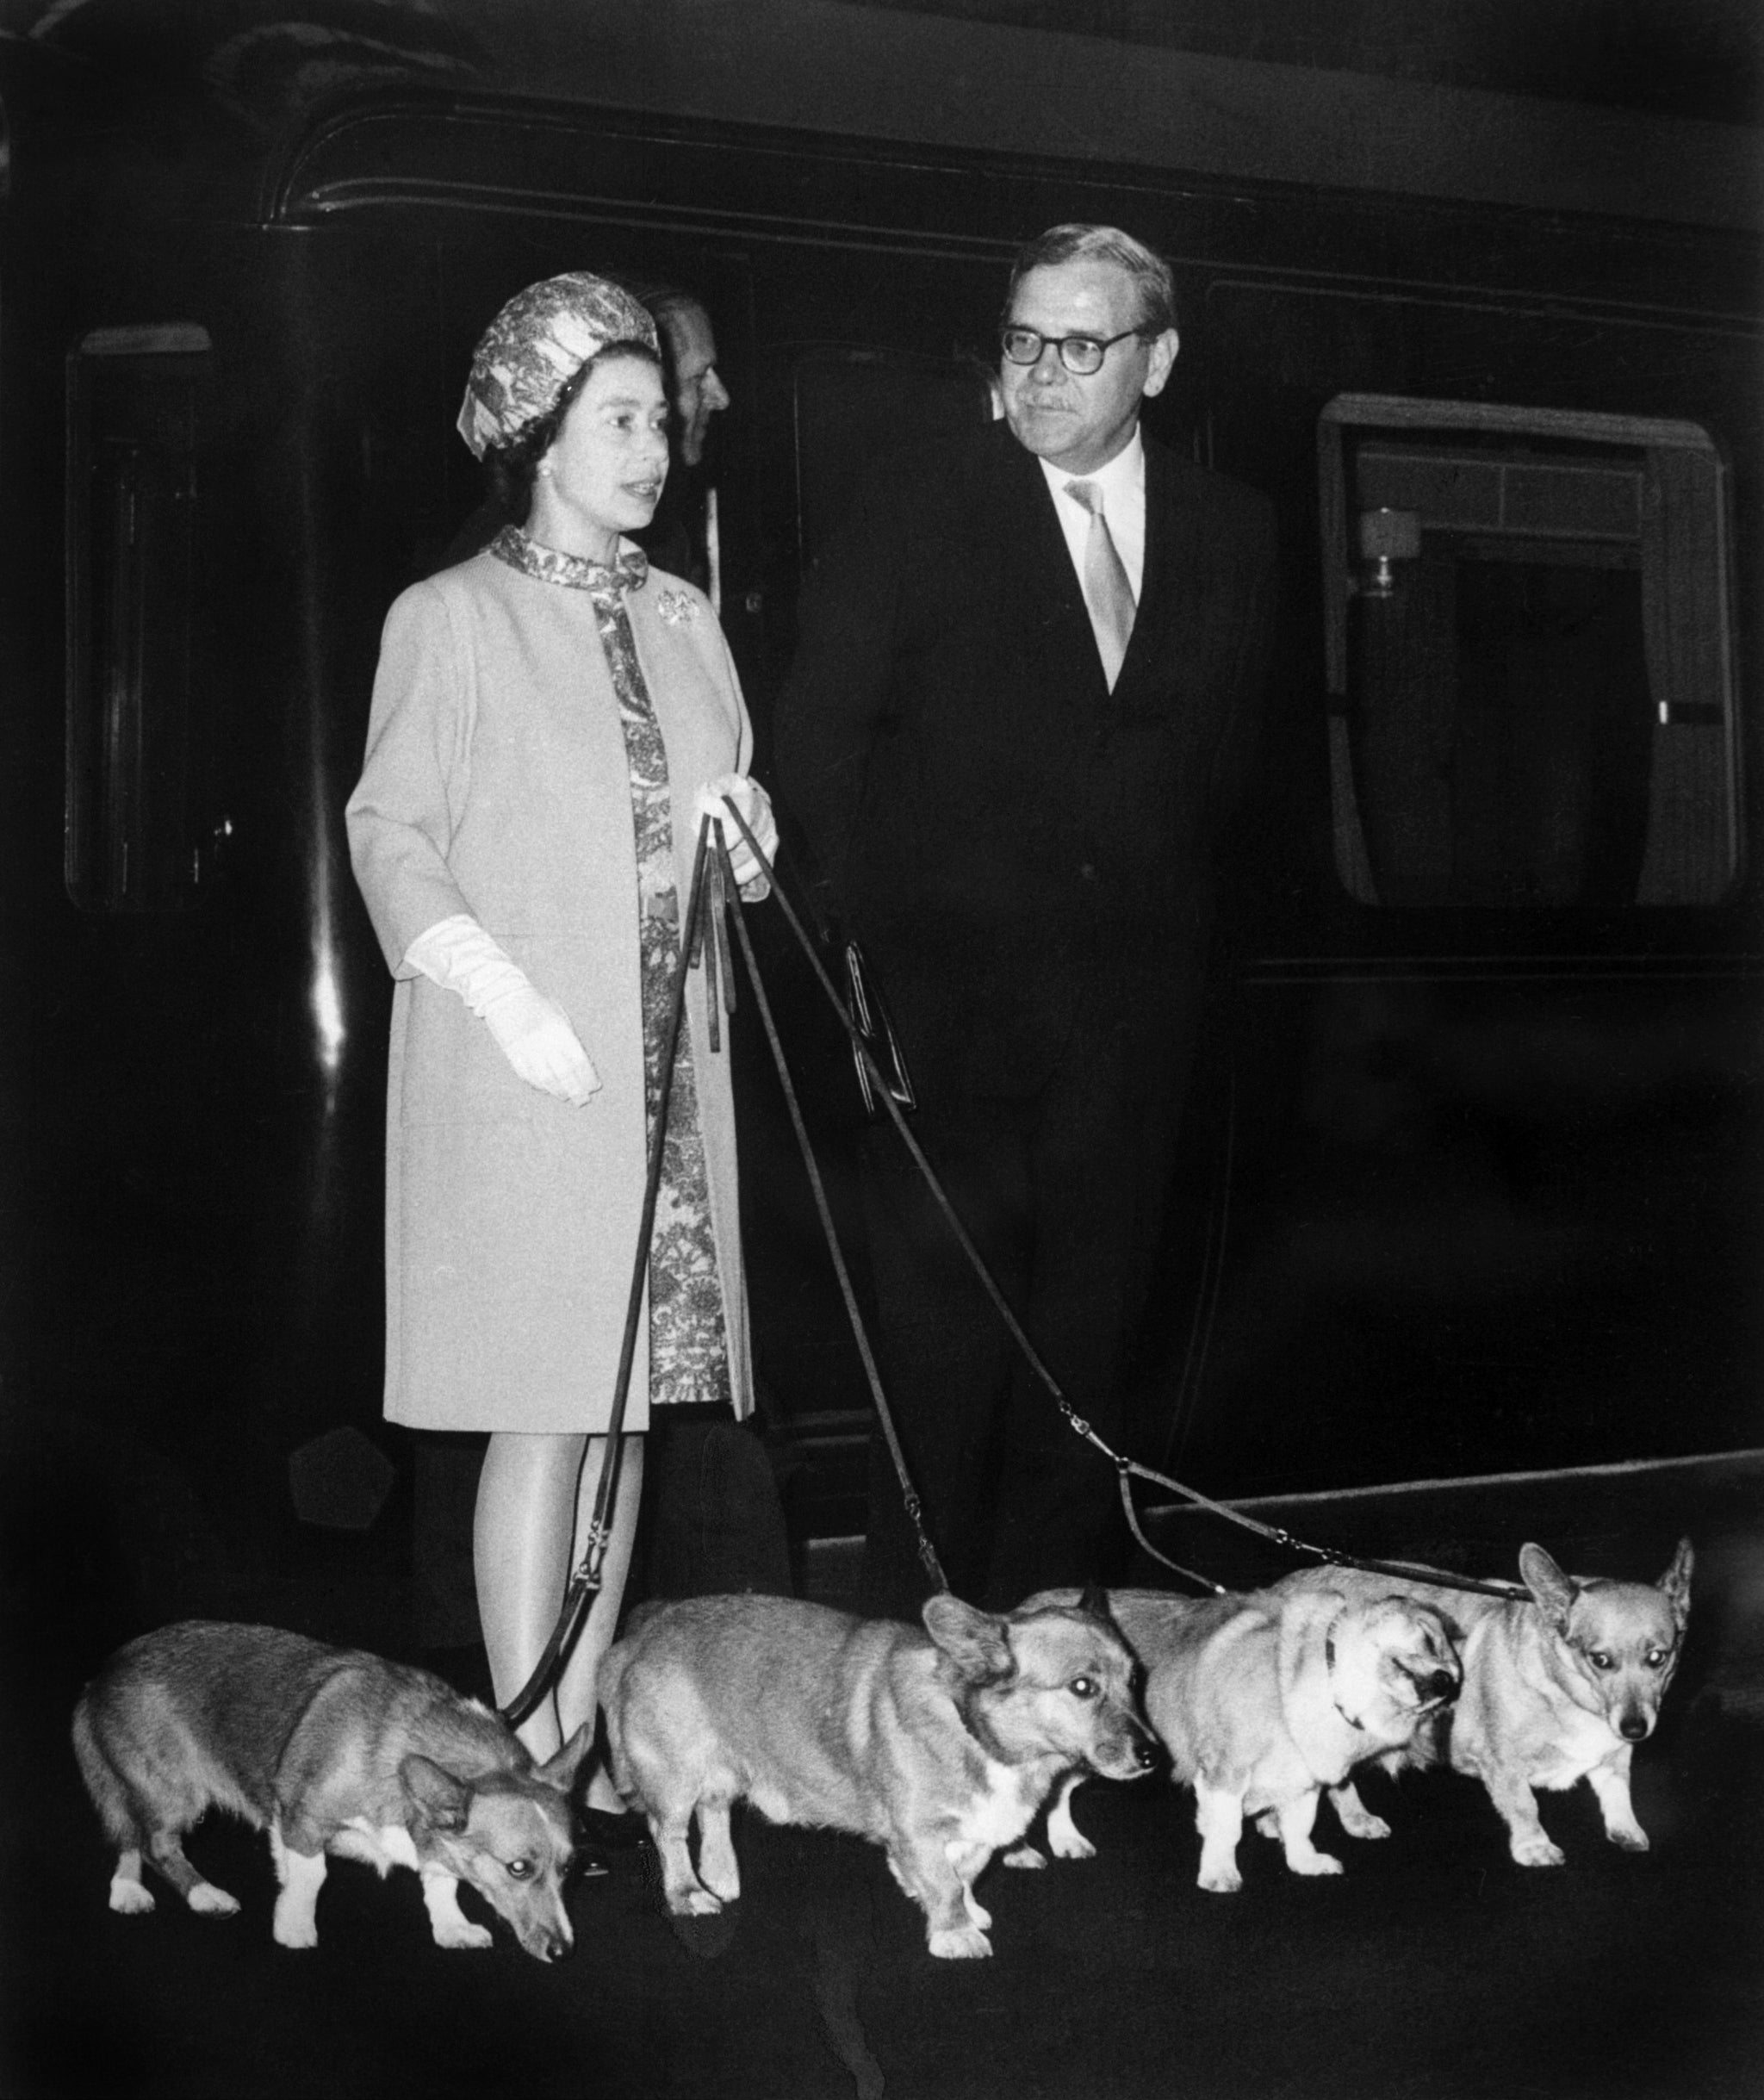 La reina Isabel II llega a la estación de tren de King’s Cross en 1969 con corgis a cuestas